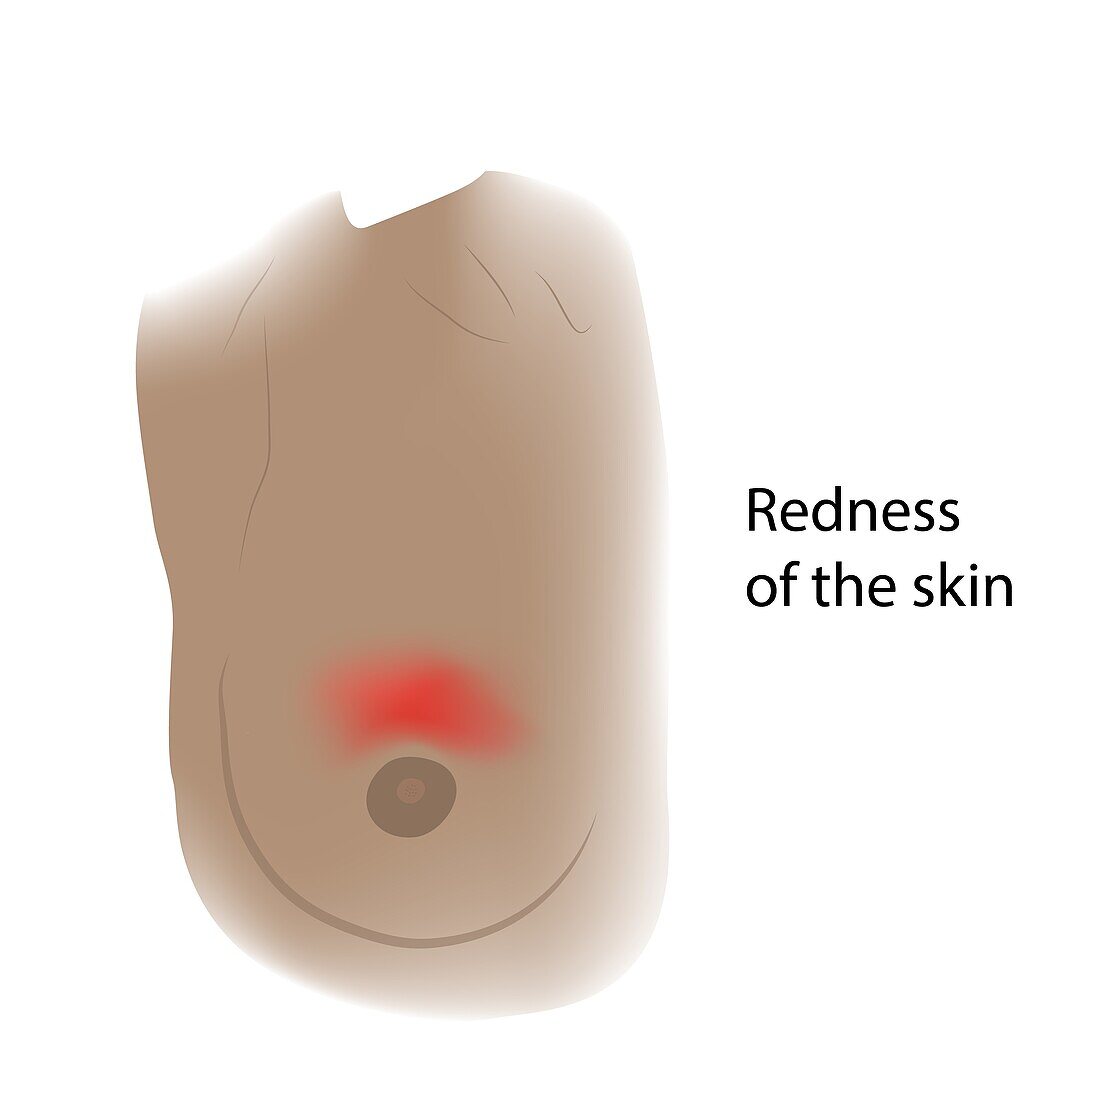 Redness of skin of female breast, illustration